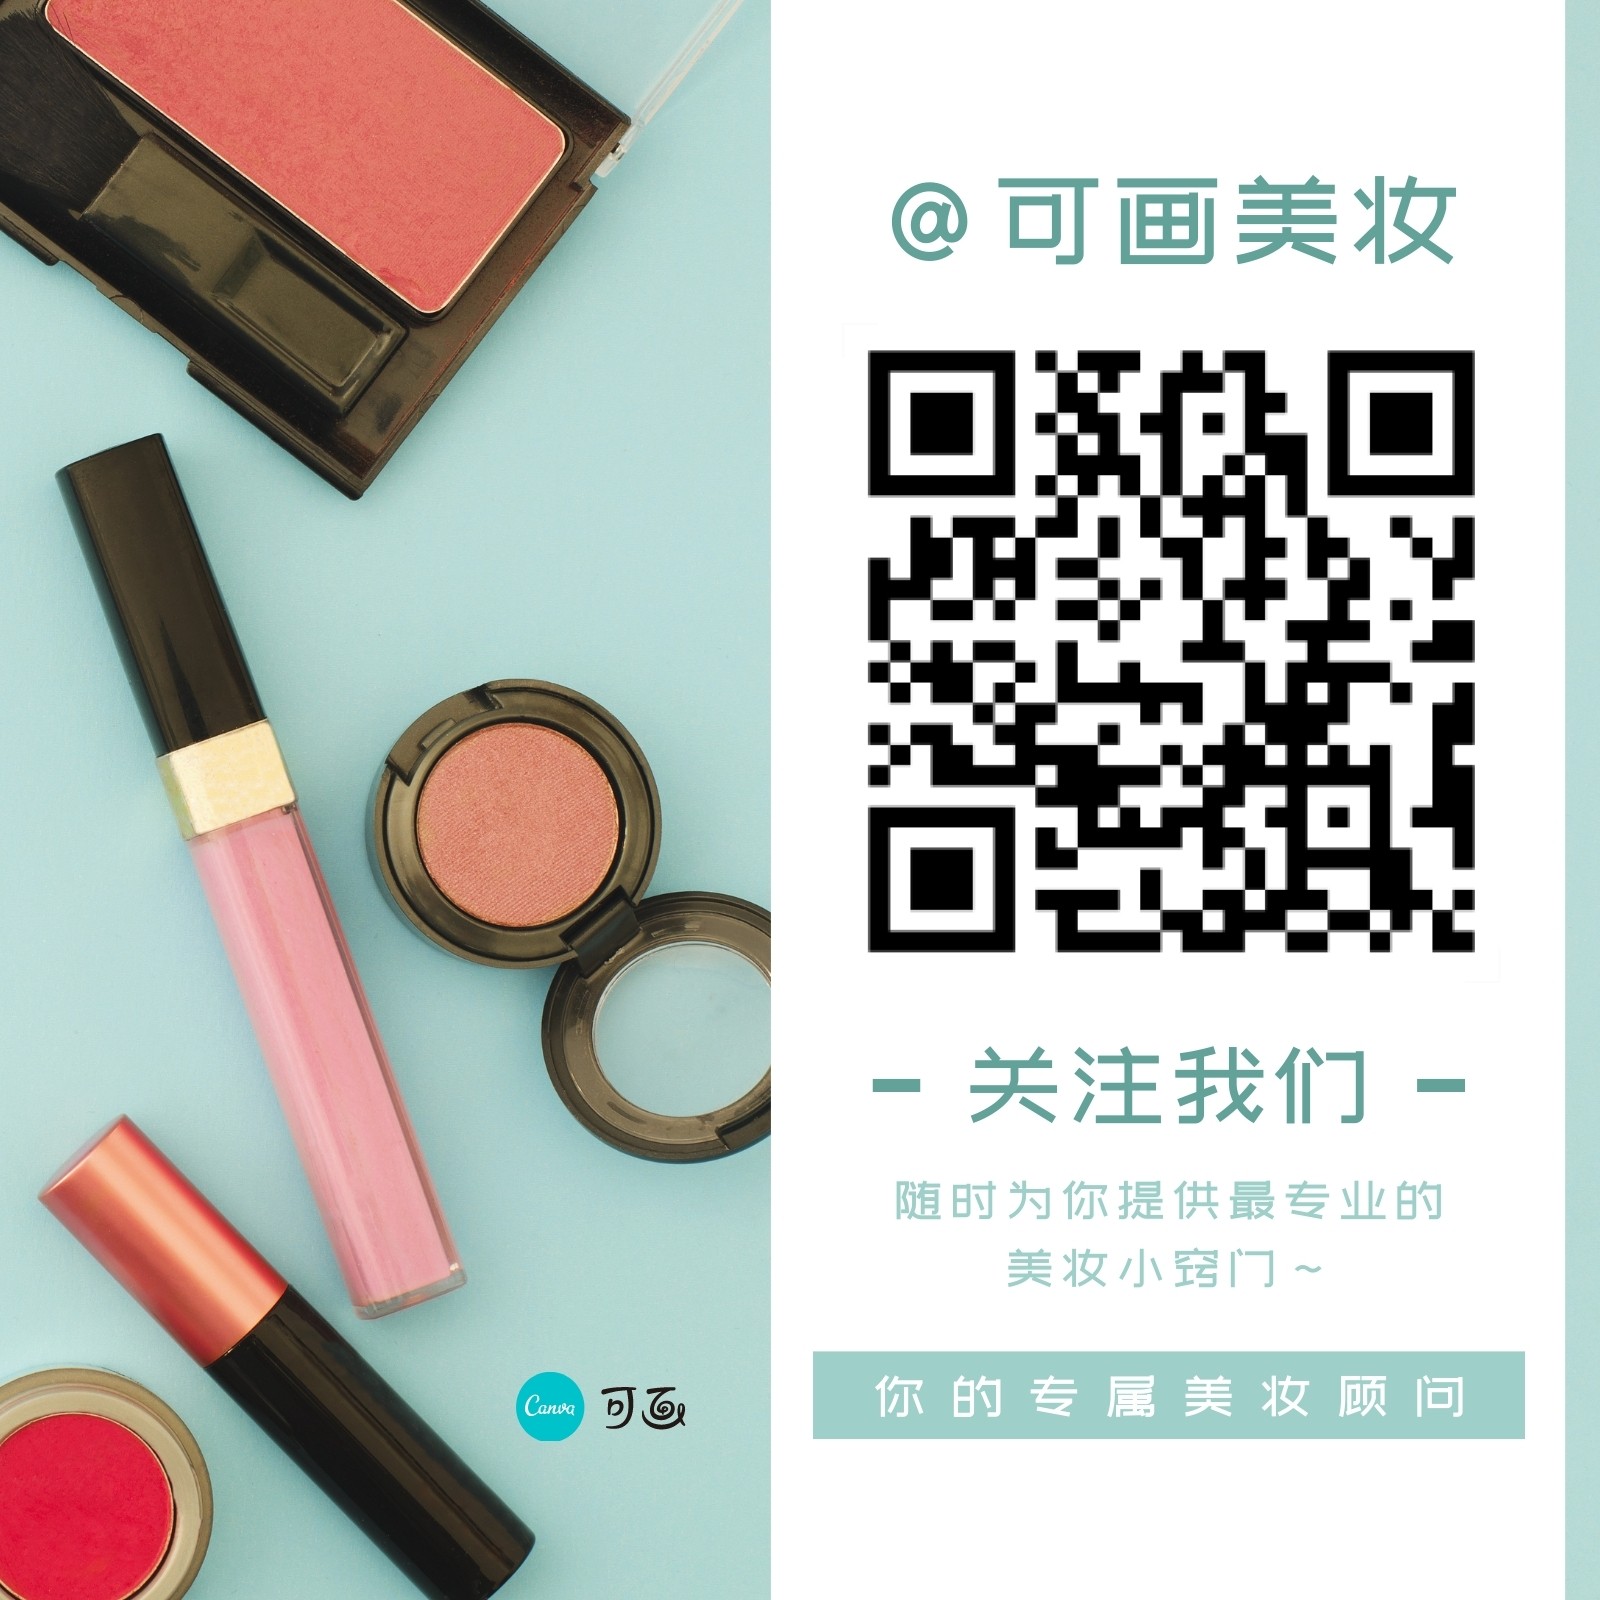 紫粉色女孩化妆口红化妆刷手绘美妆宣传中文微信公众号二维码 - 模板 - Canva可画